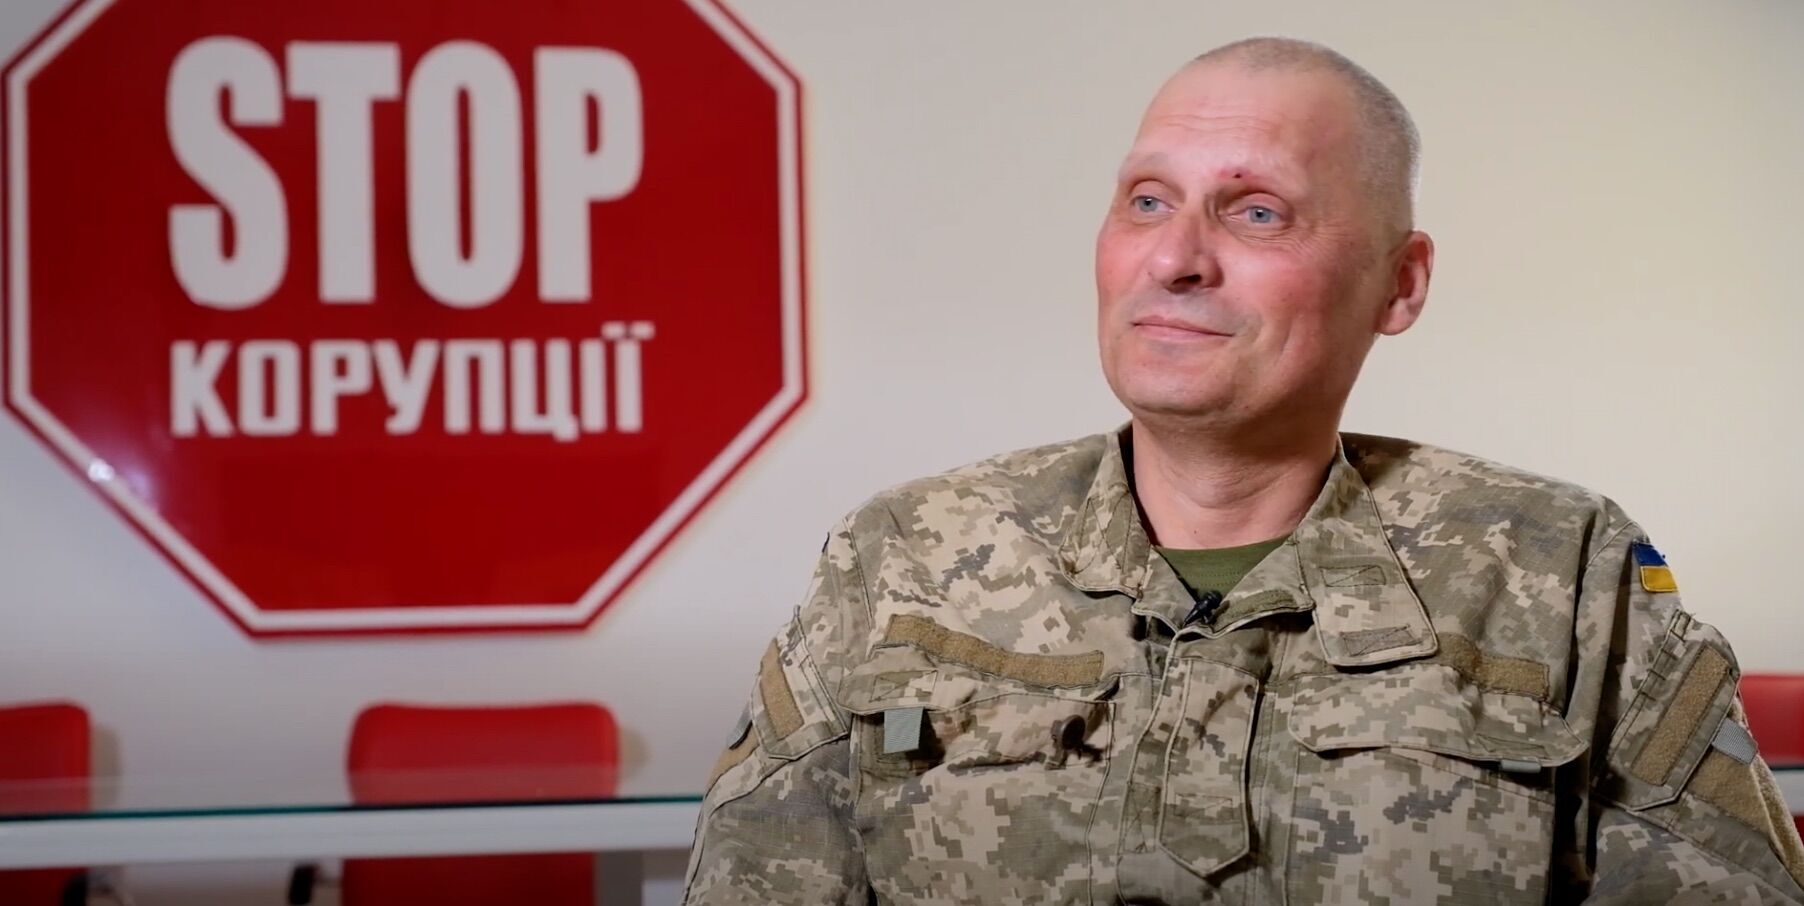 Подразделение ТрО, которым руководит стопкоровец Новосельцев, уже 8 месяцев воюет на передовой